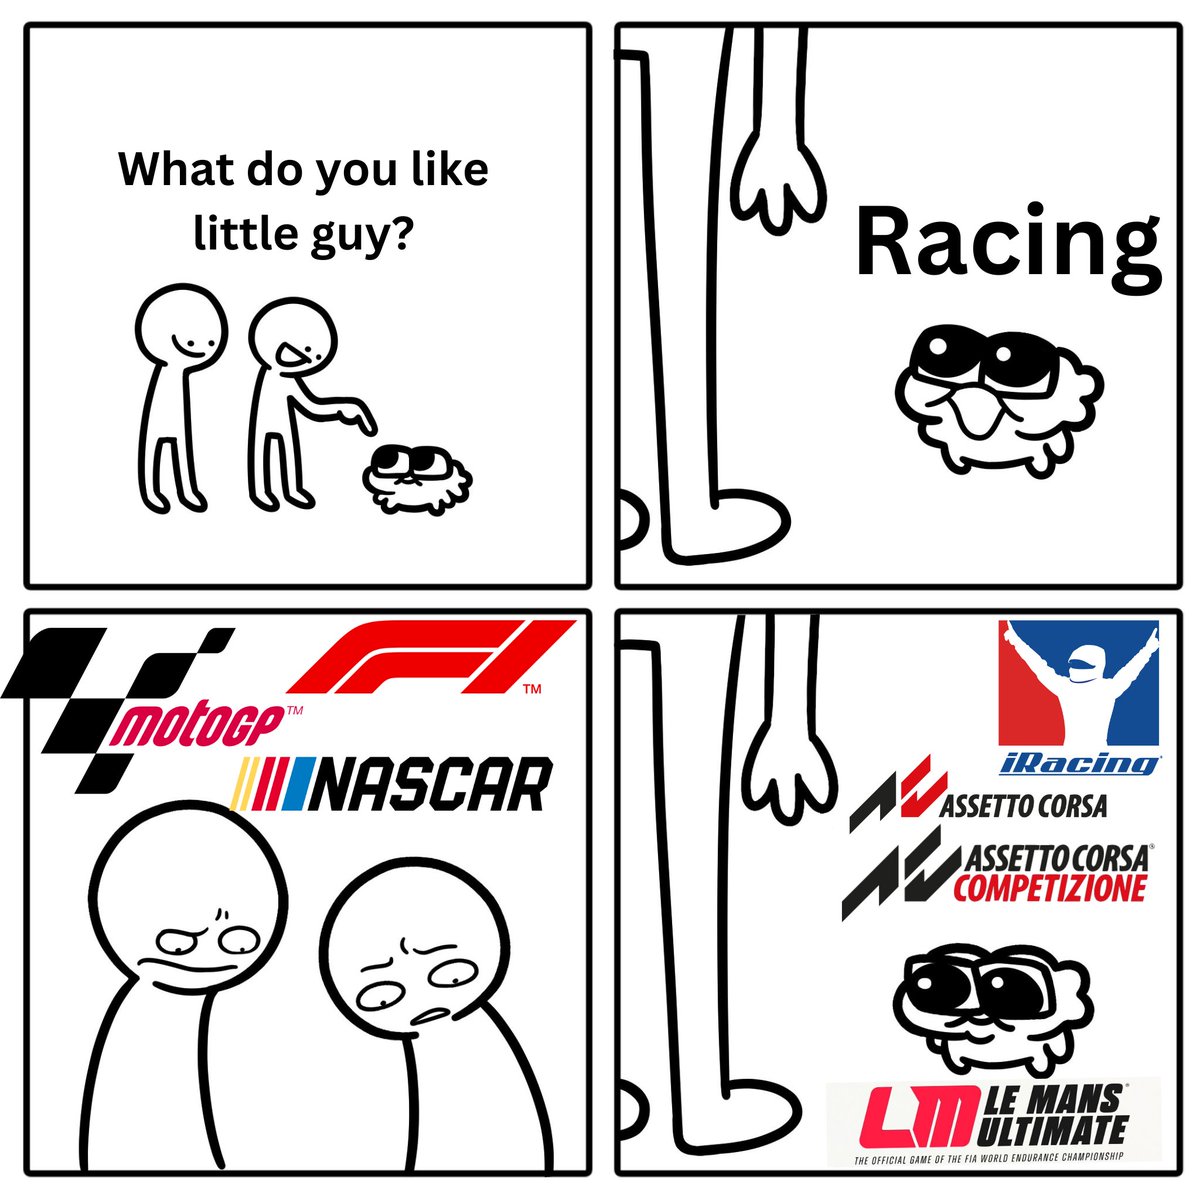 I like racing.